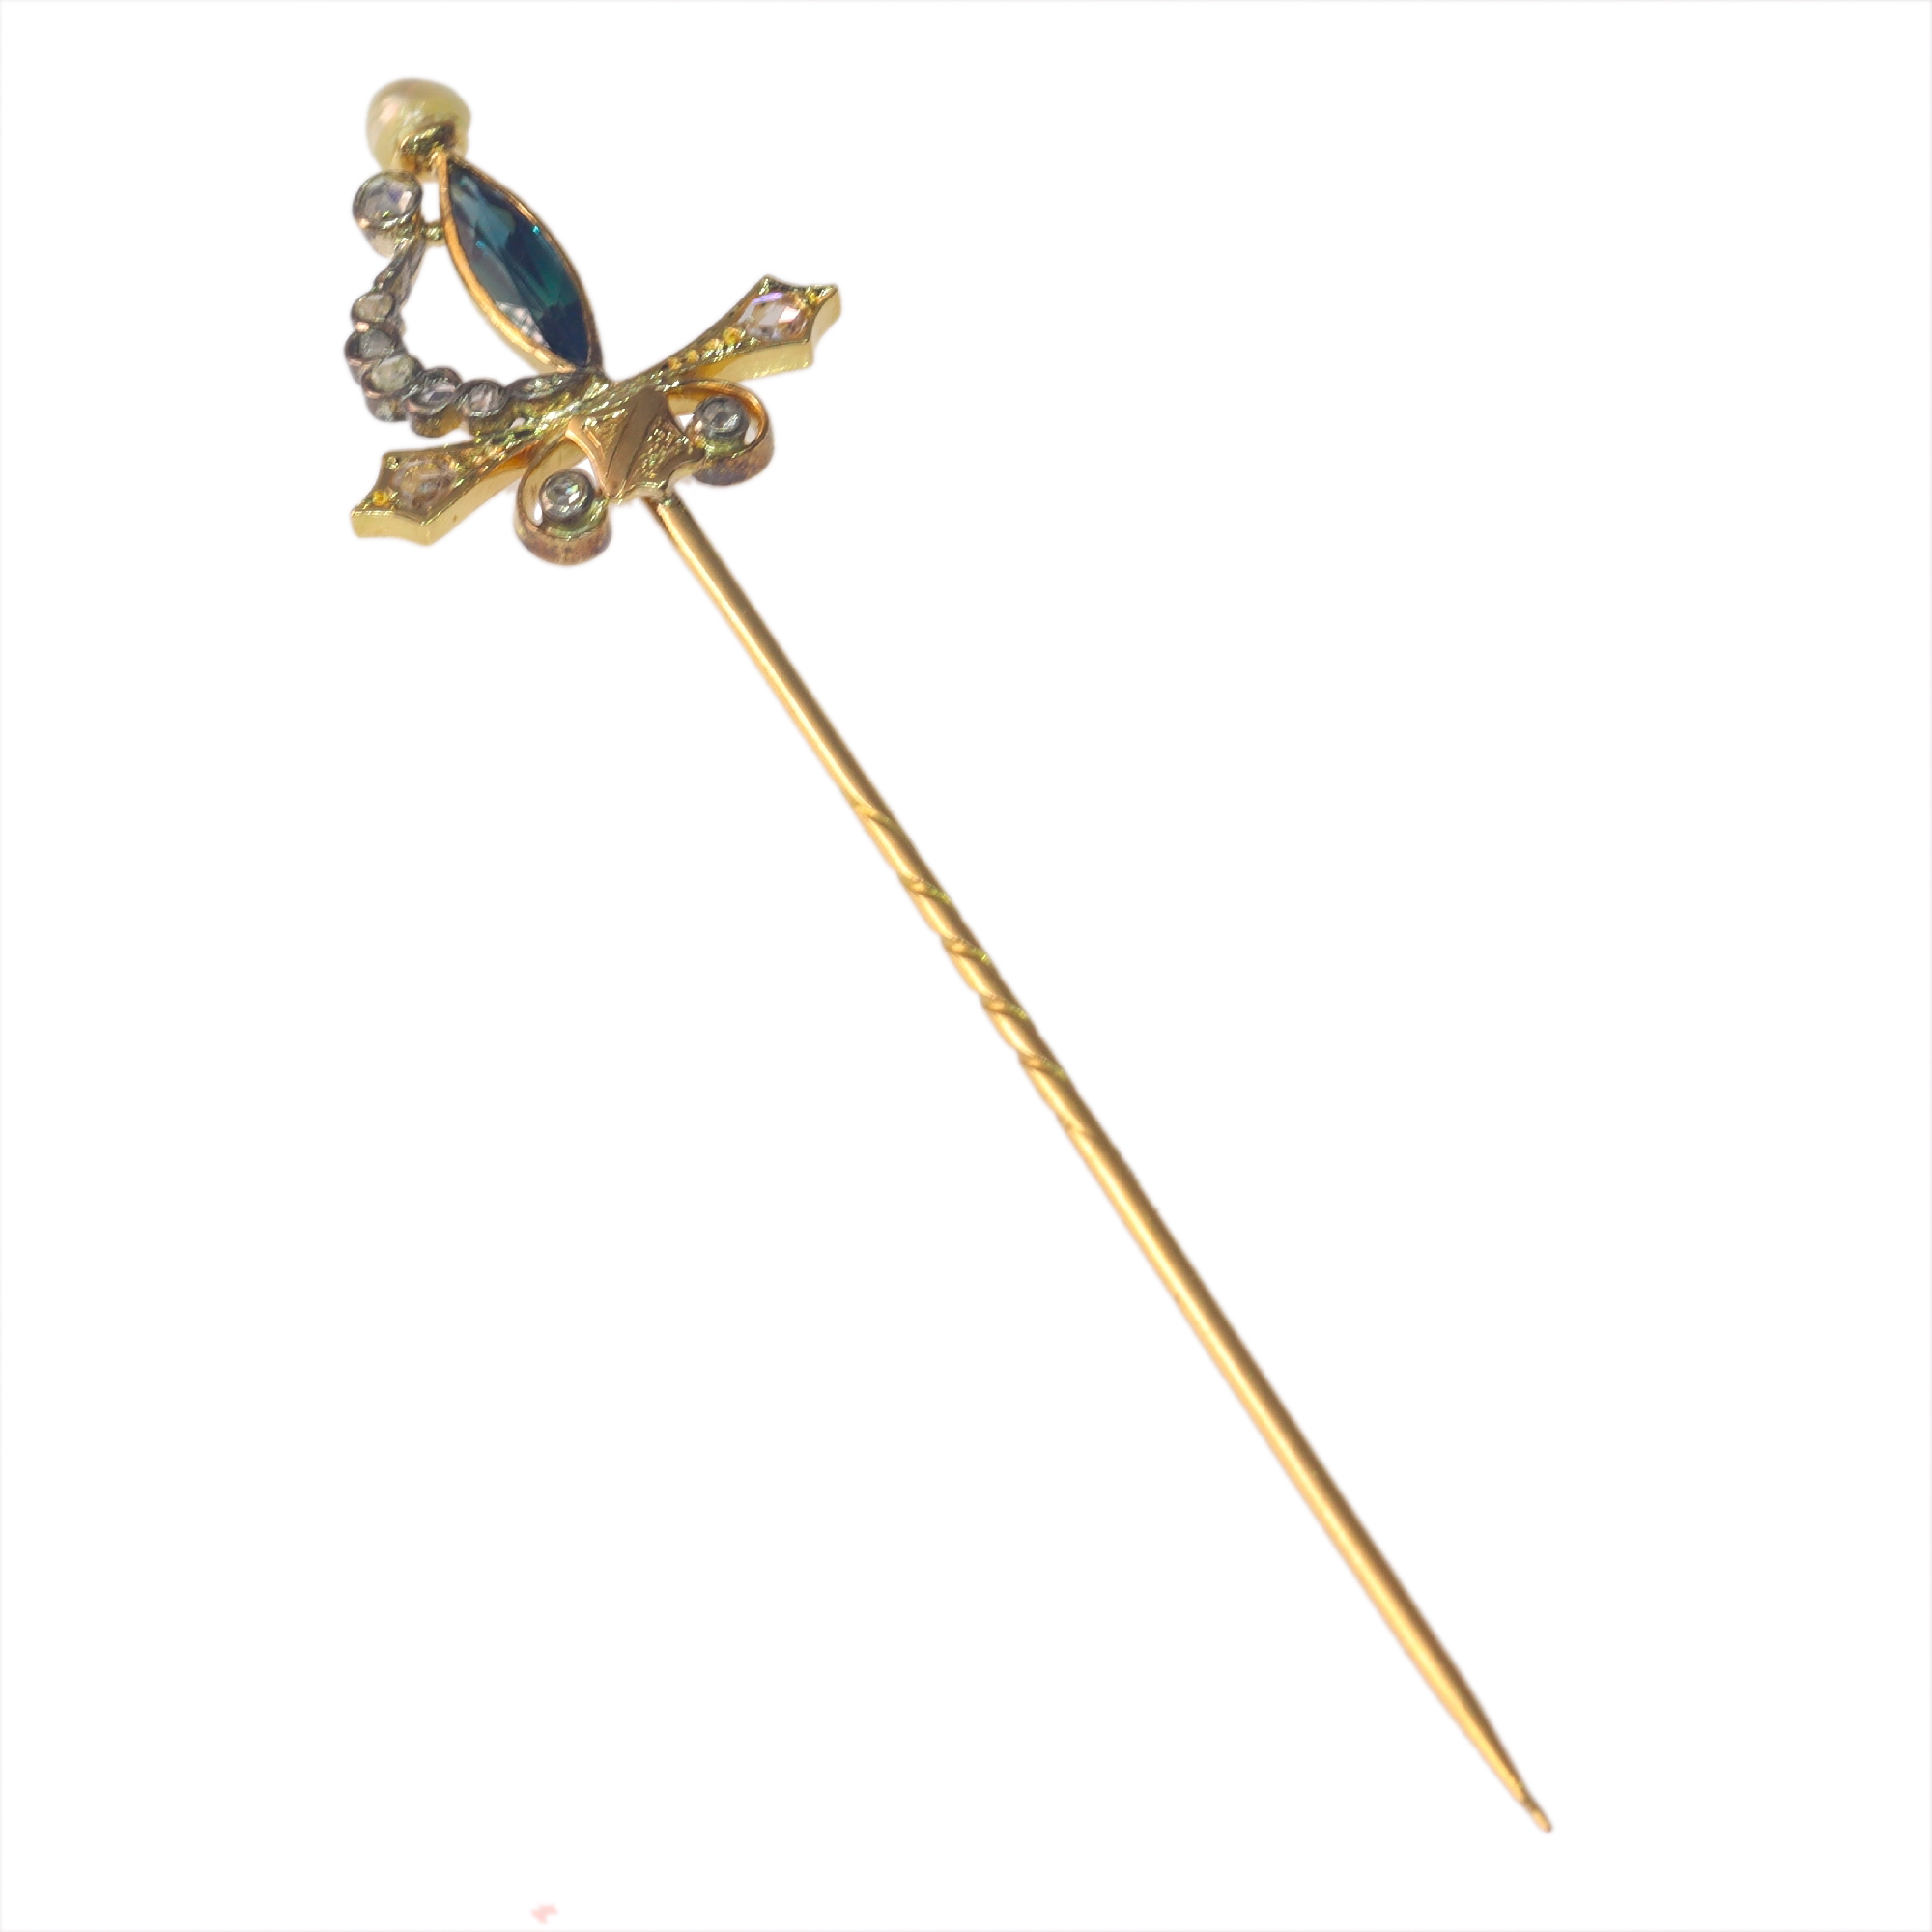 Vintage antique sword tie pin or scarf pin